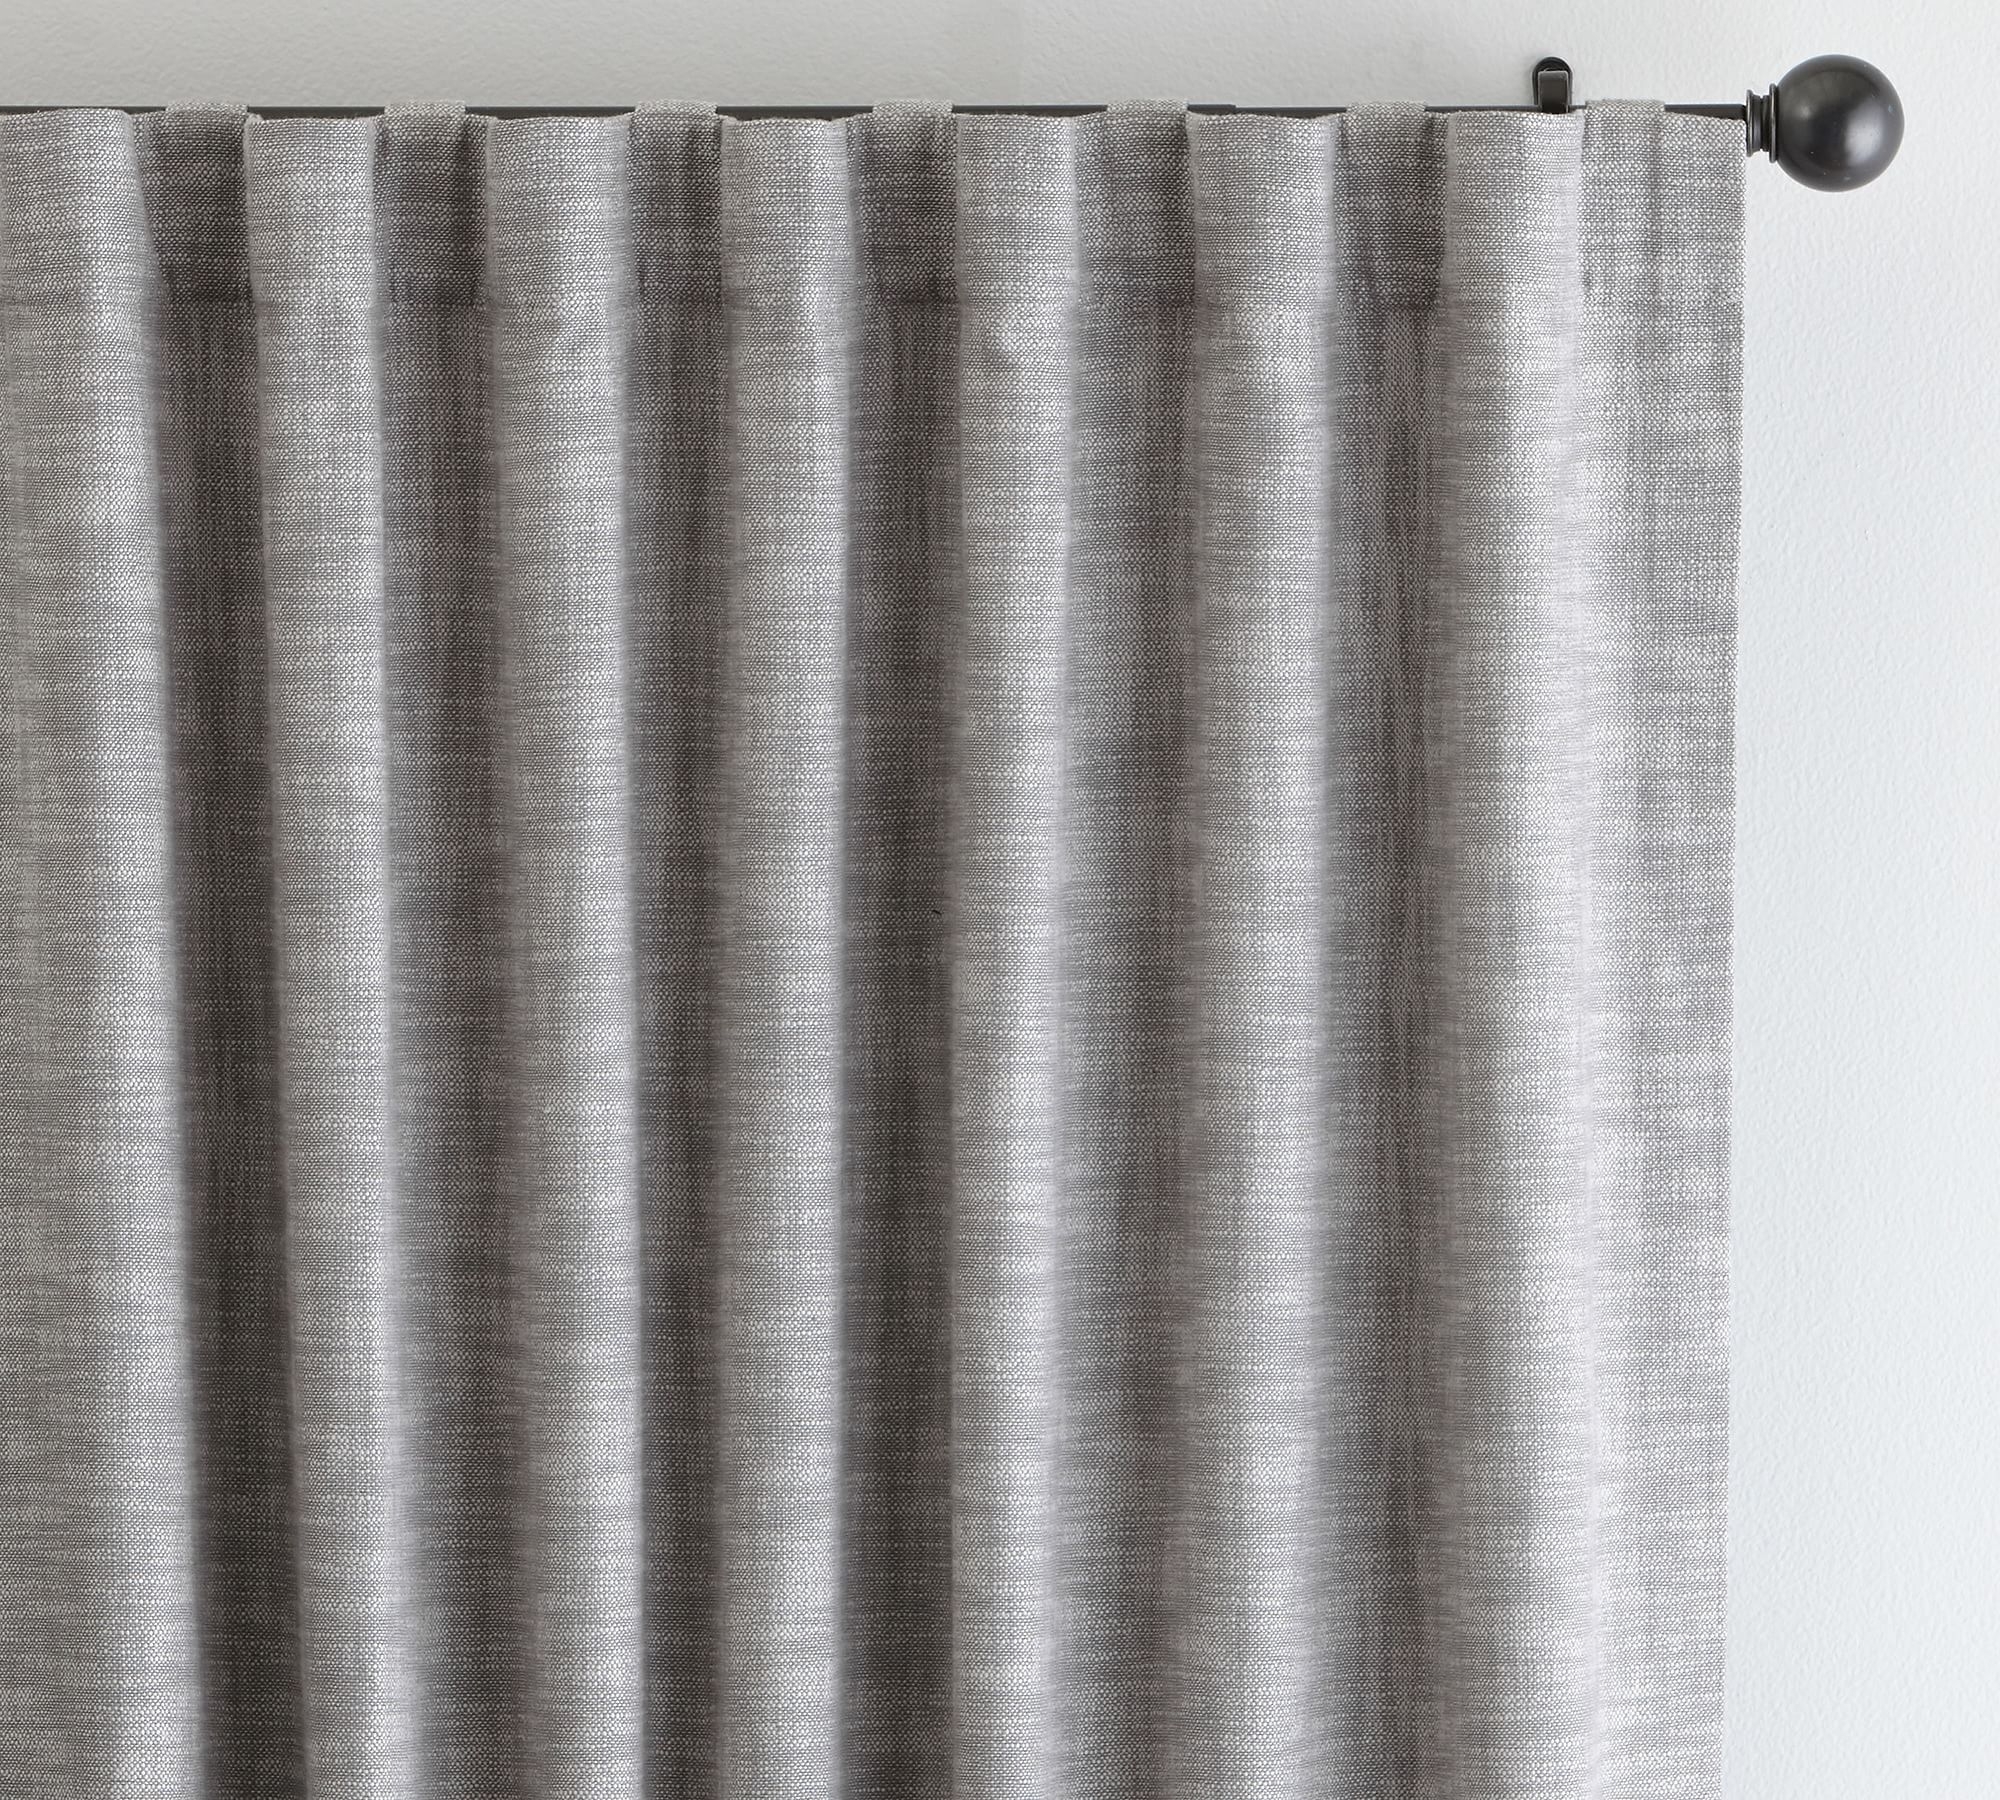 Seaton Textured Cotton Blackout Curtain, 108", Flagstone - Image 0